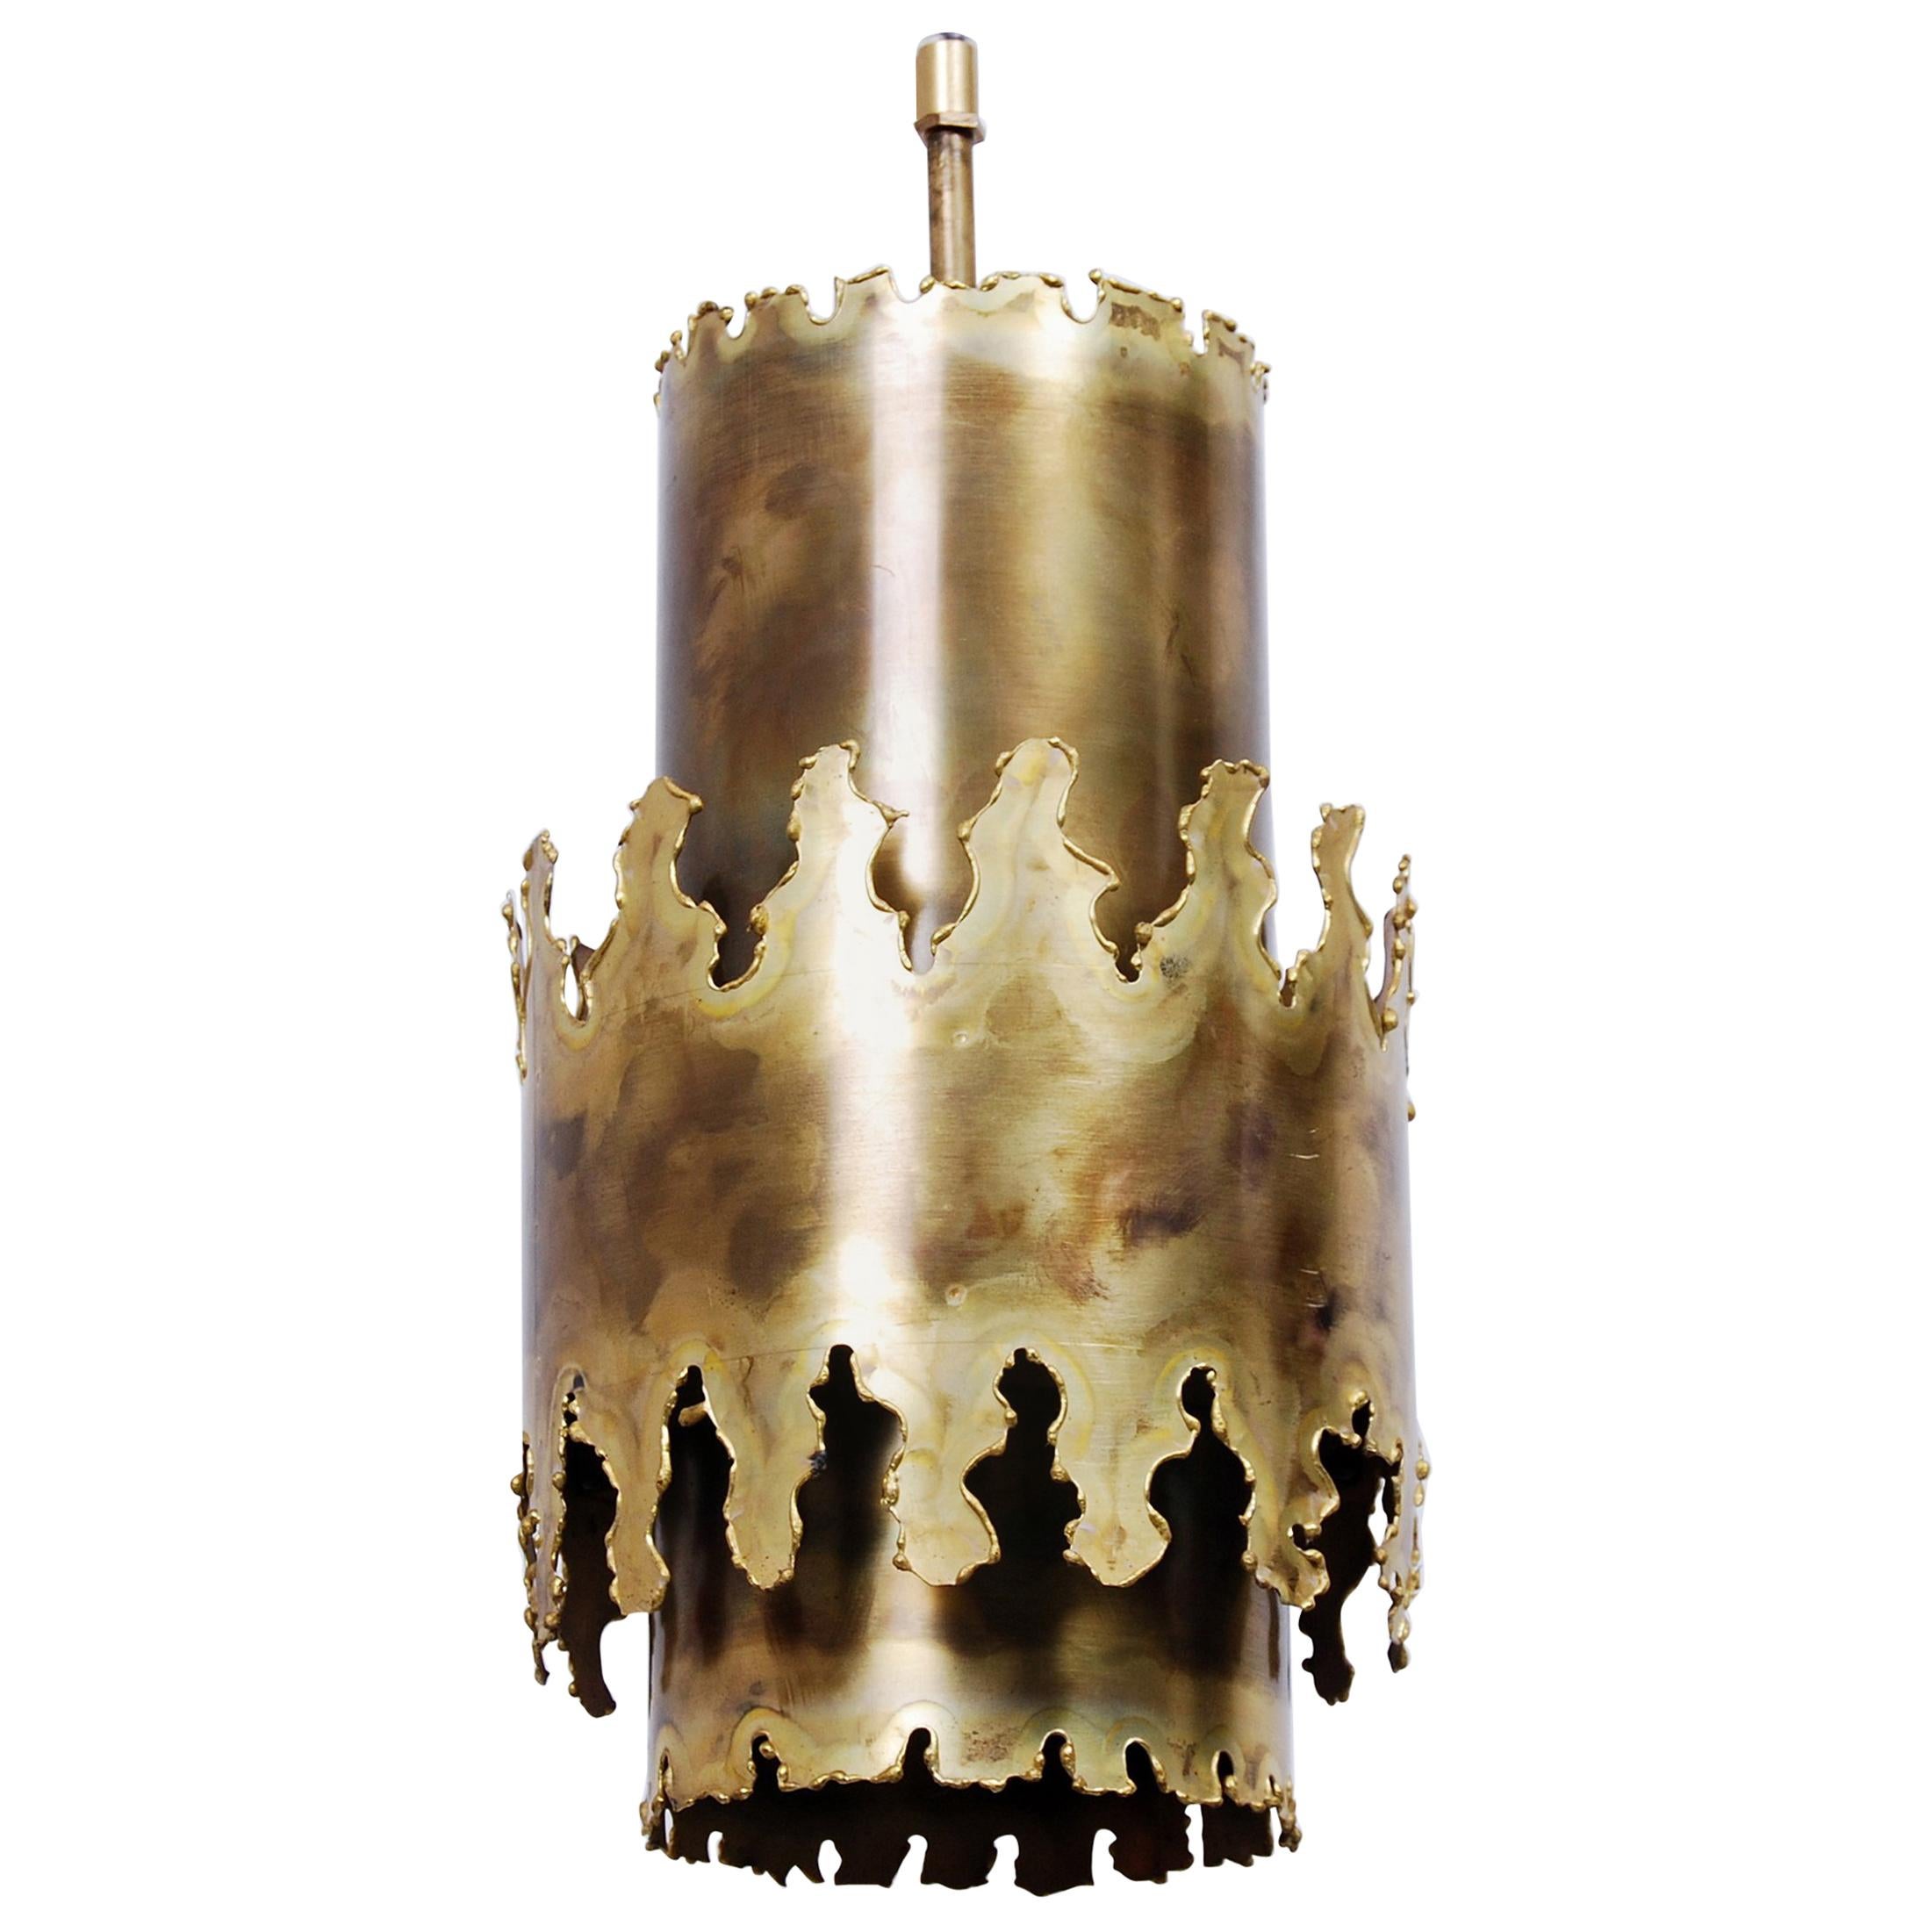 Brass Pendant by Svend Aage Holm Sørensen for Holm Sørensen & Co.